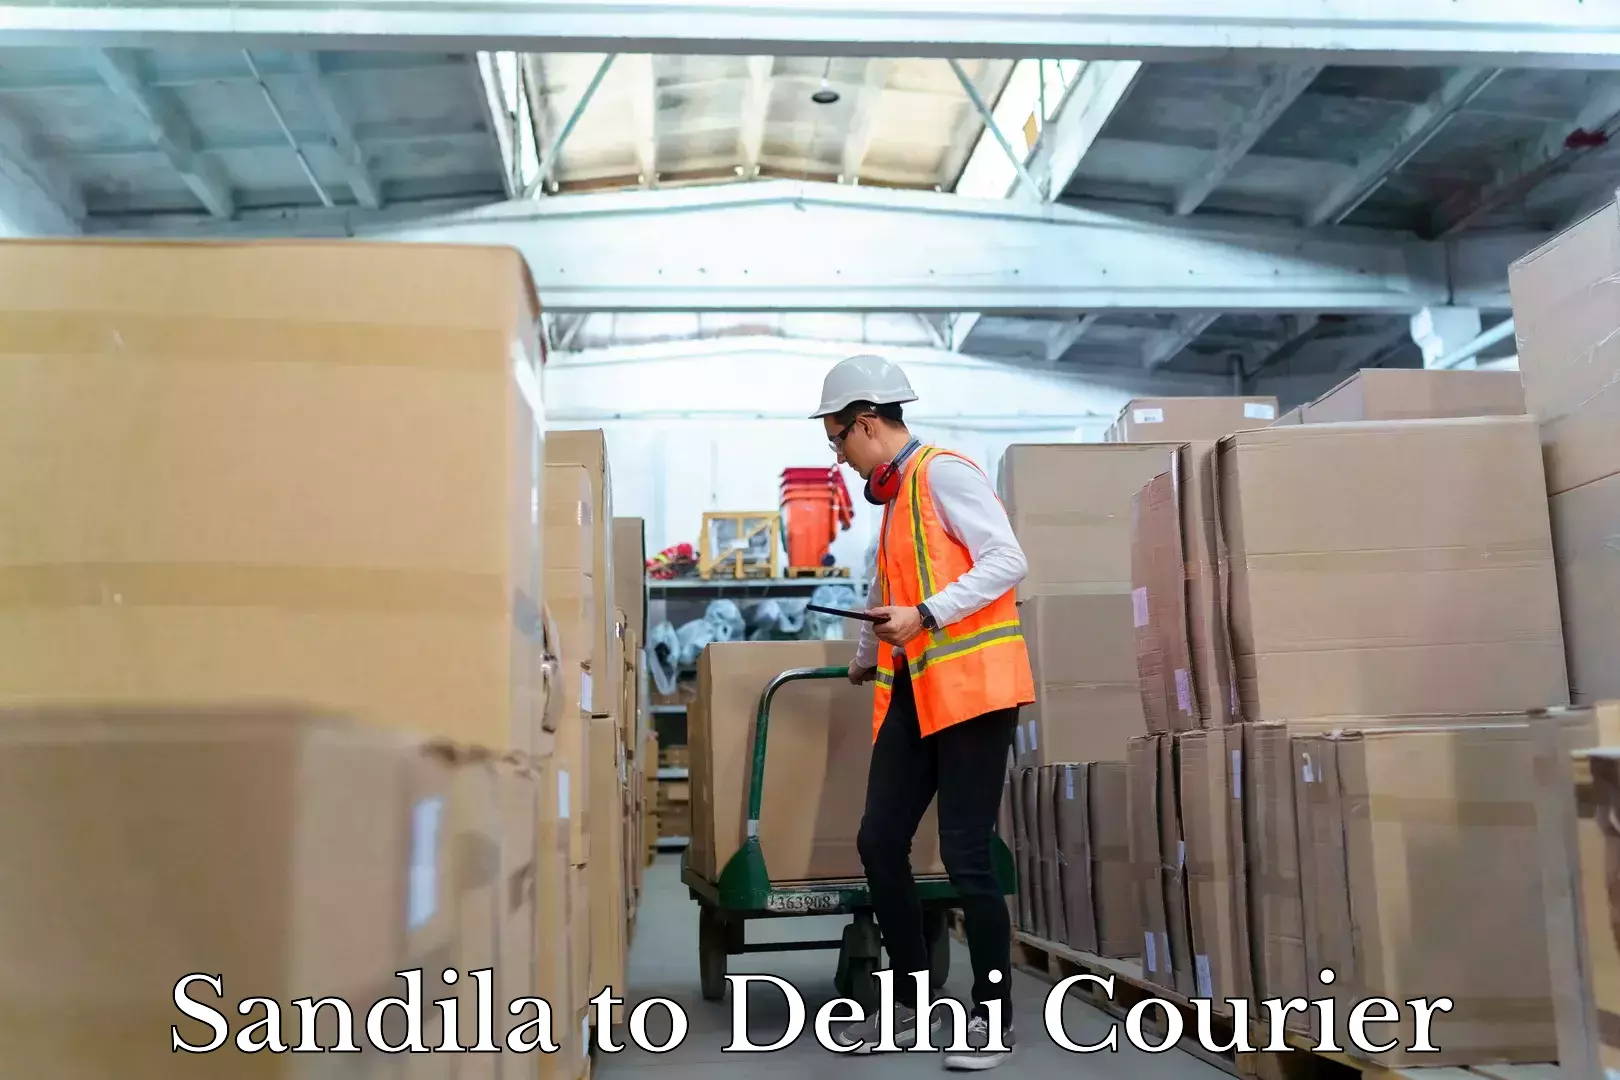 On-call courier service Sandila to Delhi